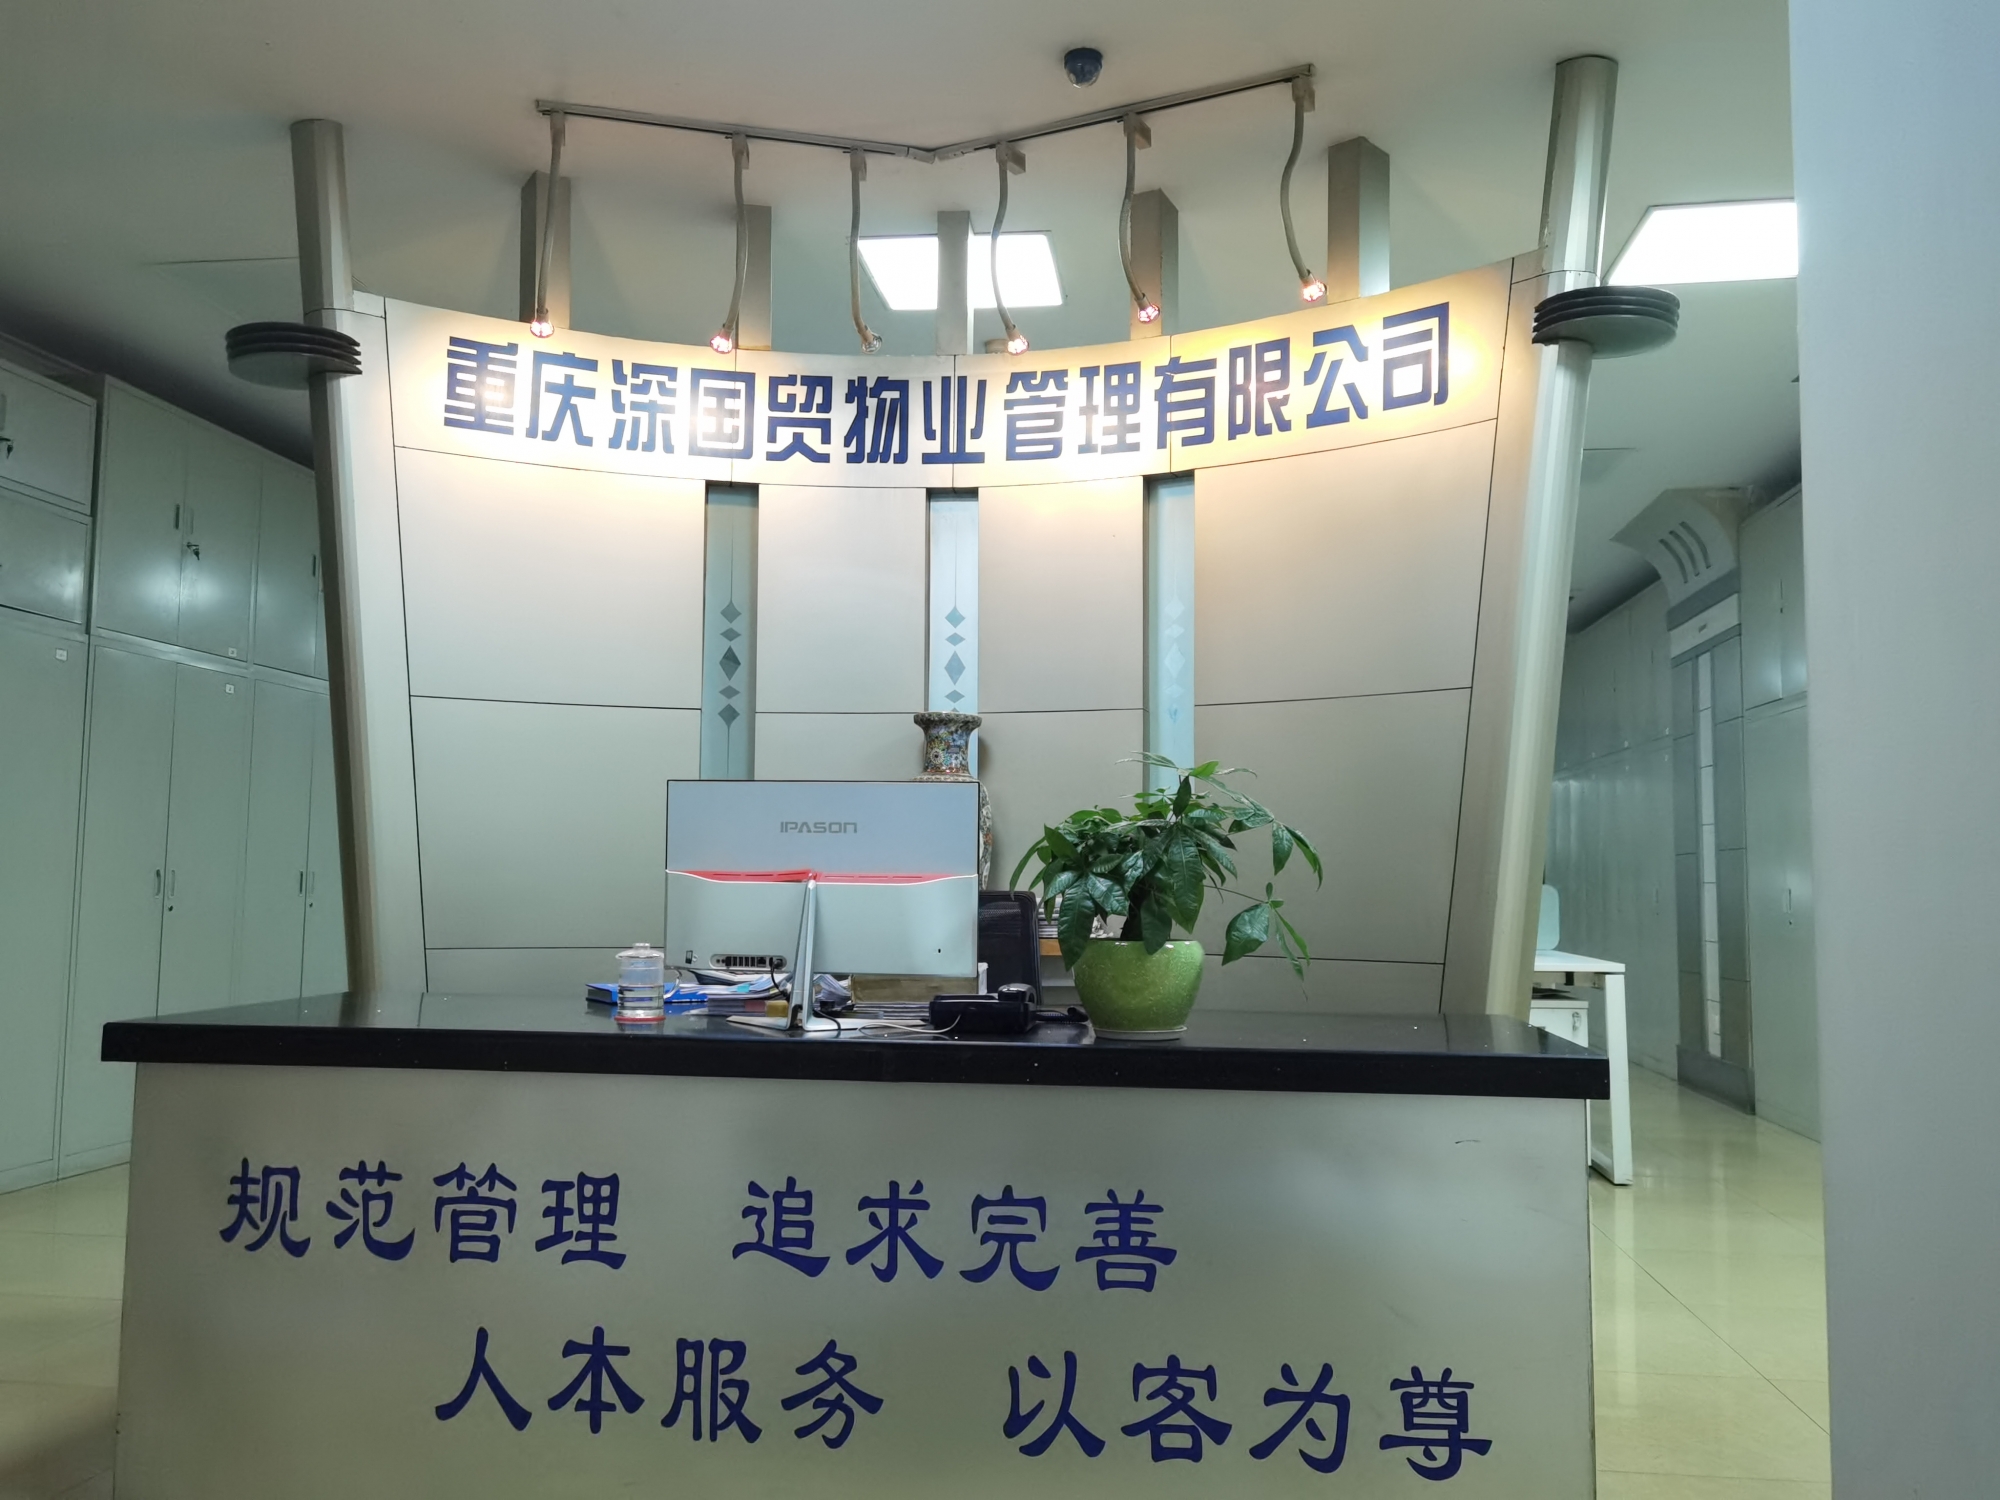 重庆深国贸物业管理有限公司 环境照片活动图片